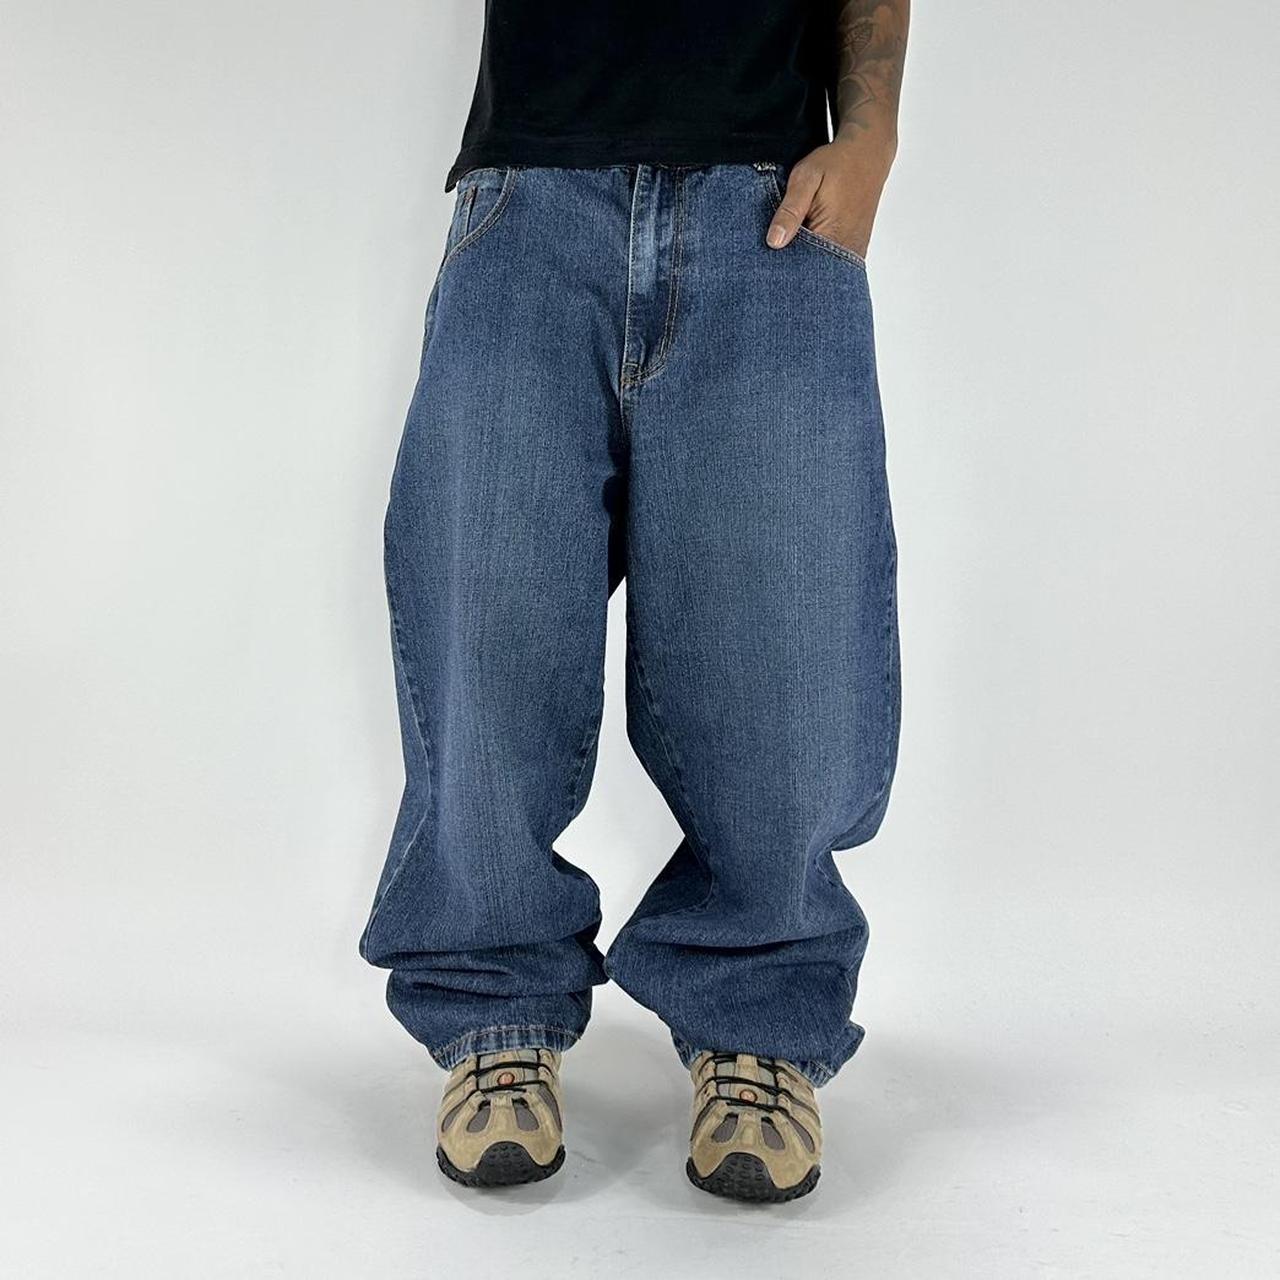 2000s Y2K Fubu Baggy Loose Fit Jean Pants Fits Mens... - Depop